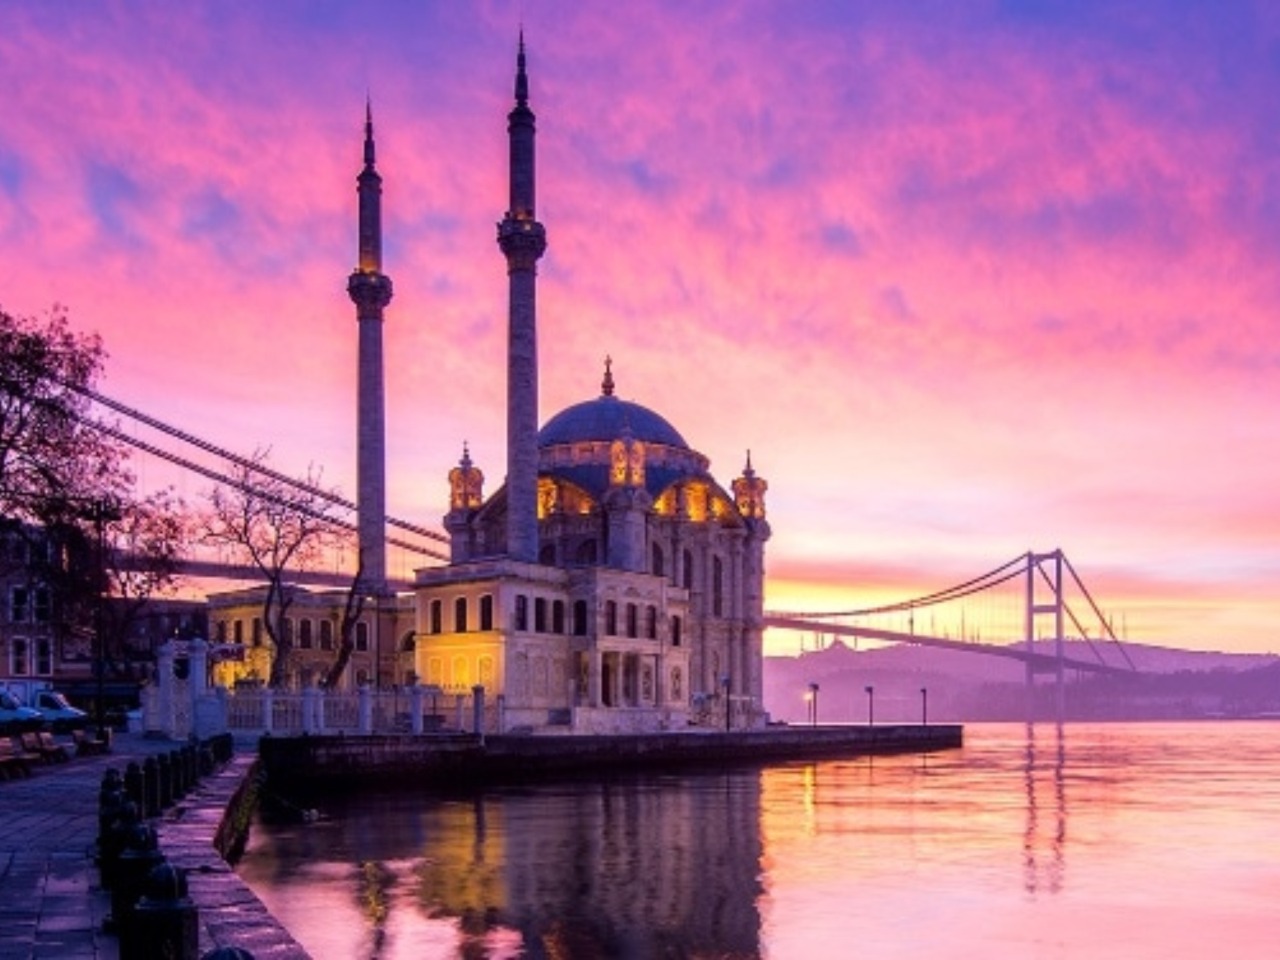 Стамбул чарующий | Цена 225€, отзывы, описание экскурсии